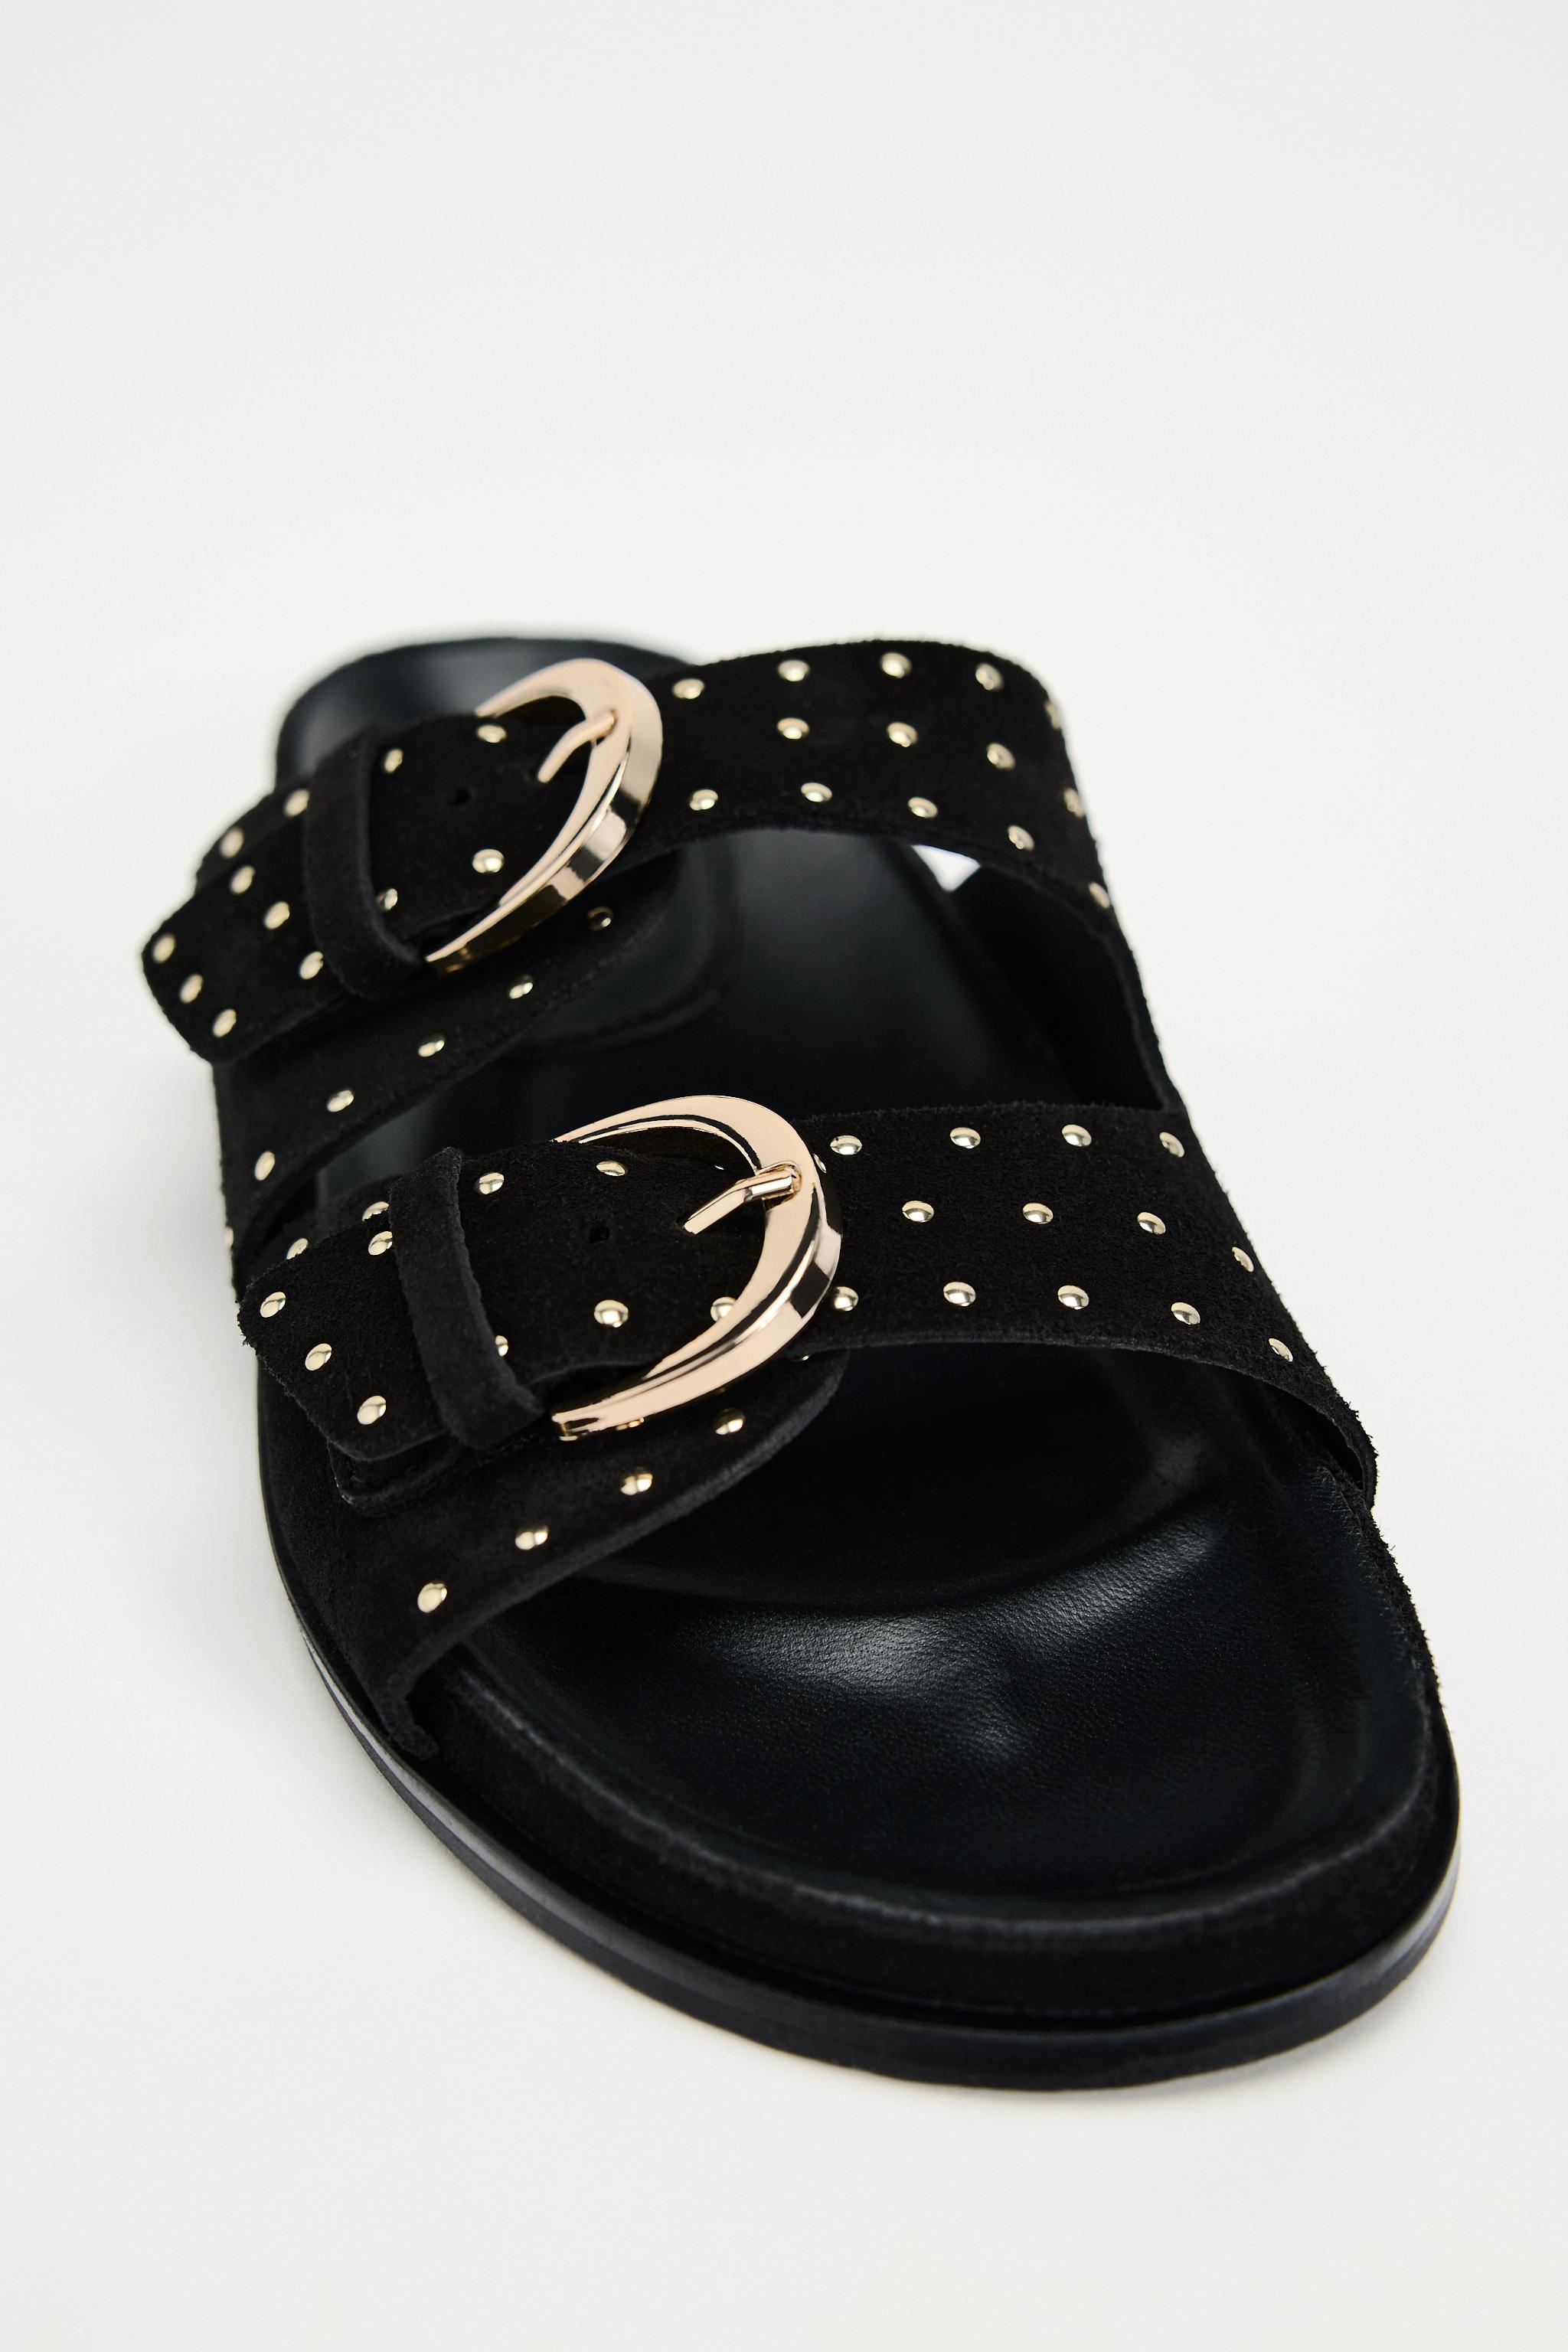 Studded Sandals - Black - Ladies